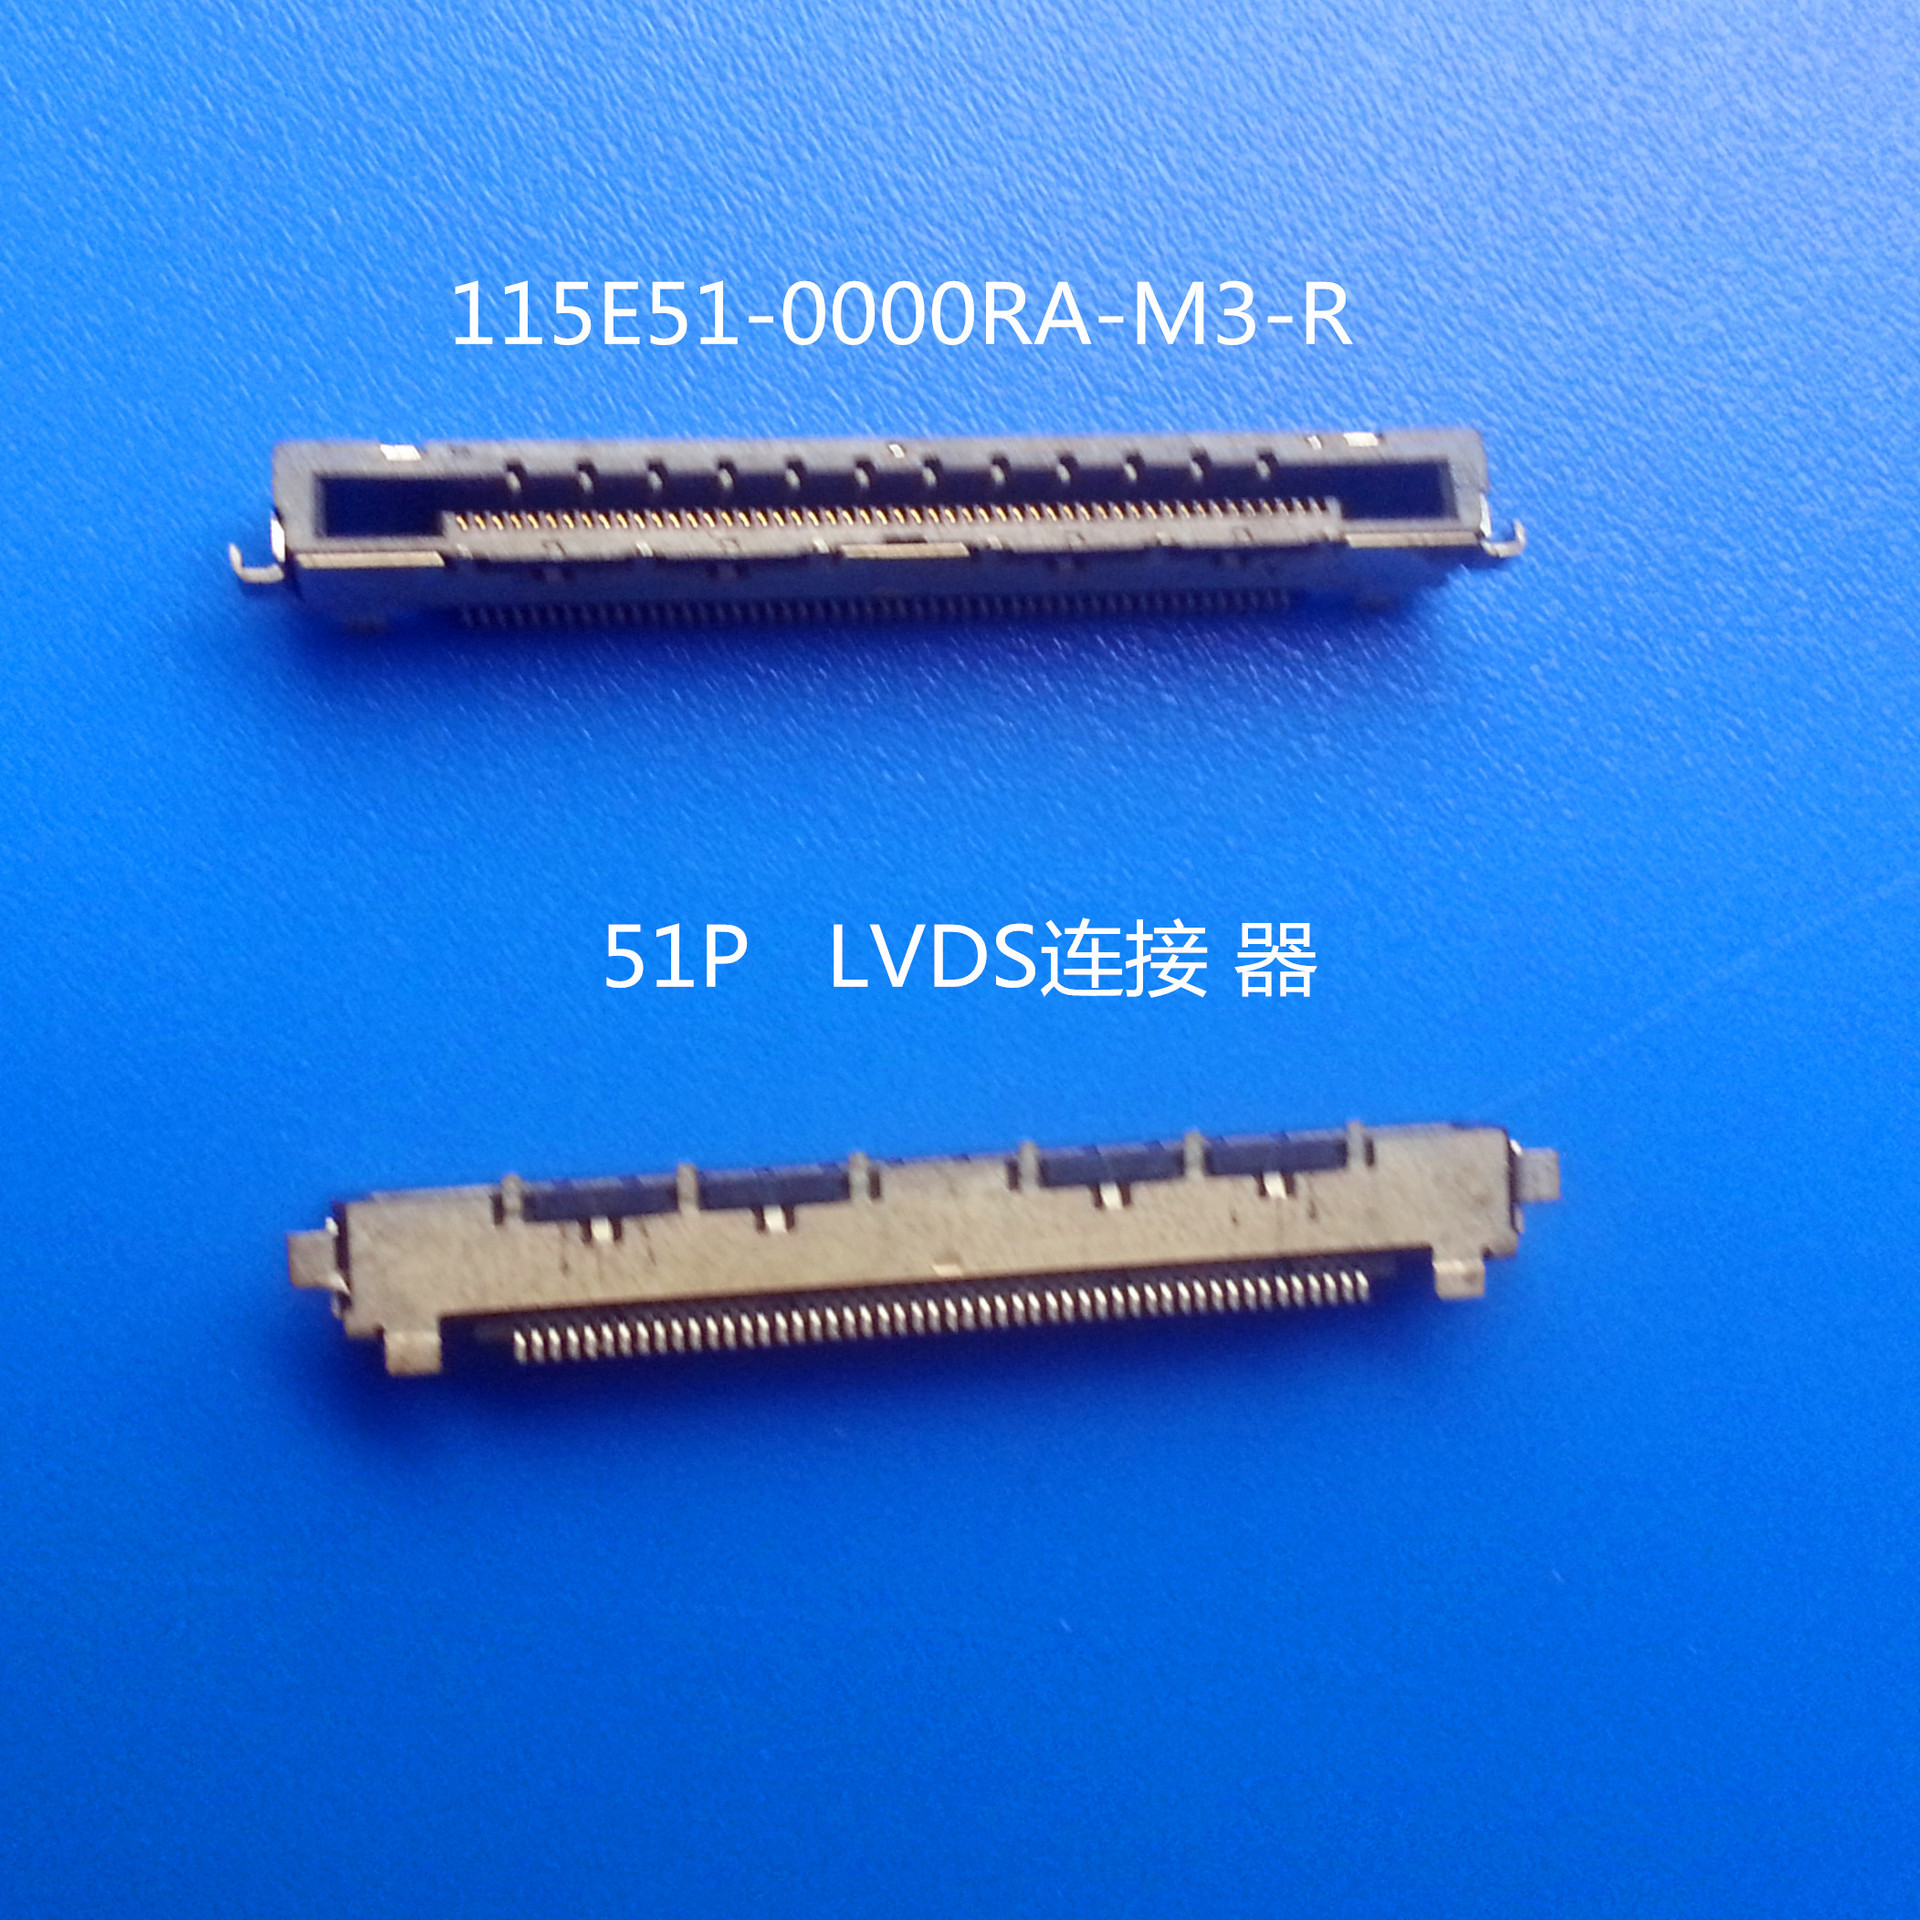 原厂/ 0.5MM间距 /51P LVDS连接器 /FIX